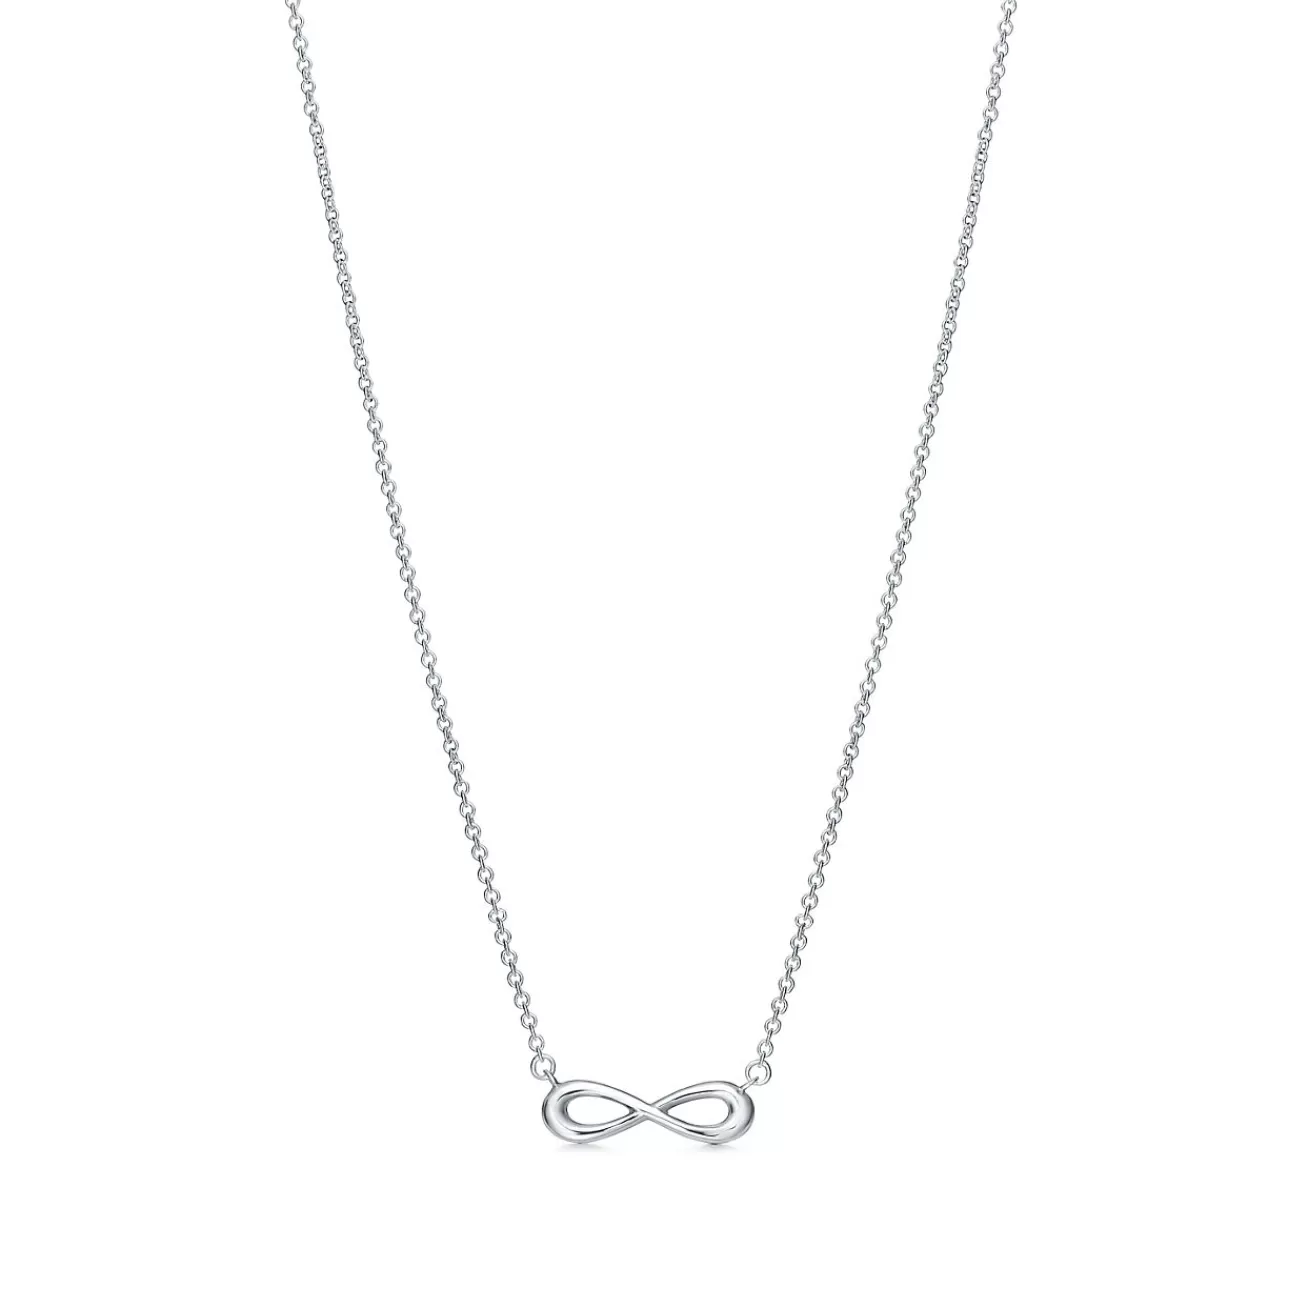 Tiffany & Co. Tiffany Infinity pendant in sterling silver, mini. | ^ Necklaces & Pendants | Sterling Silver Jewelry